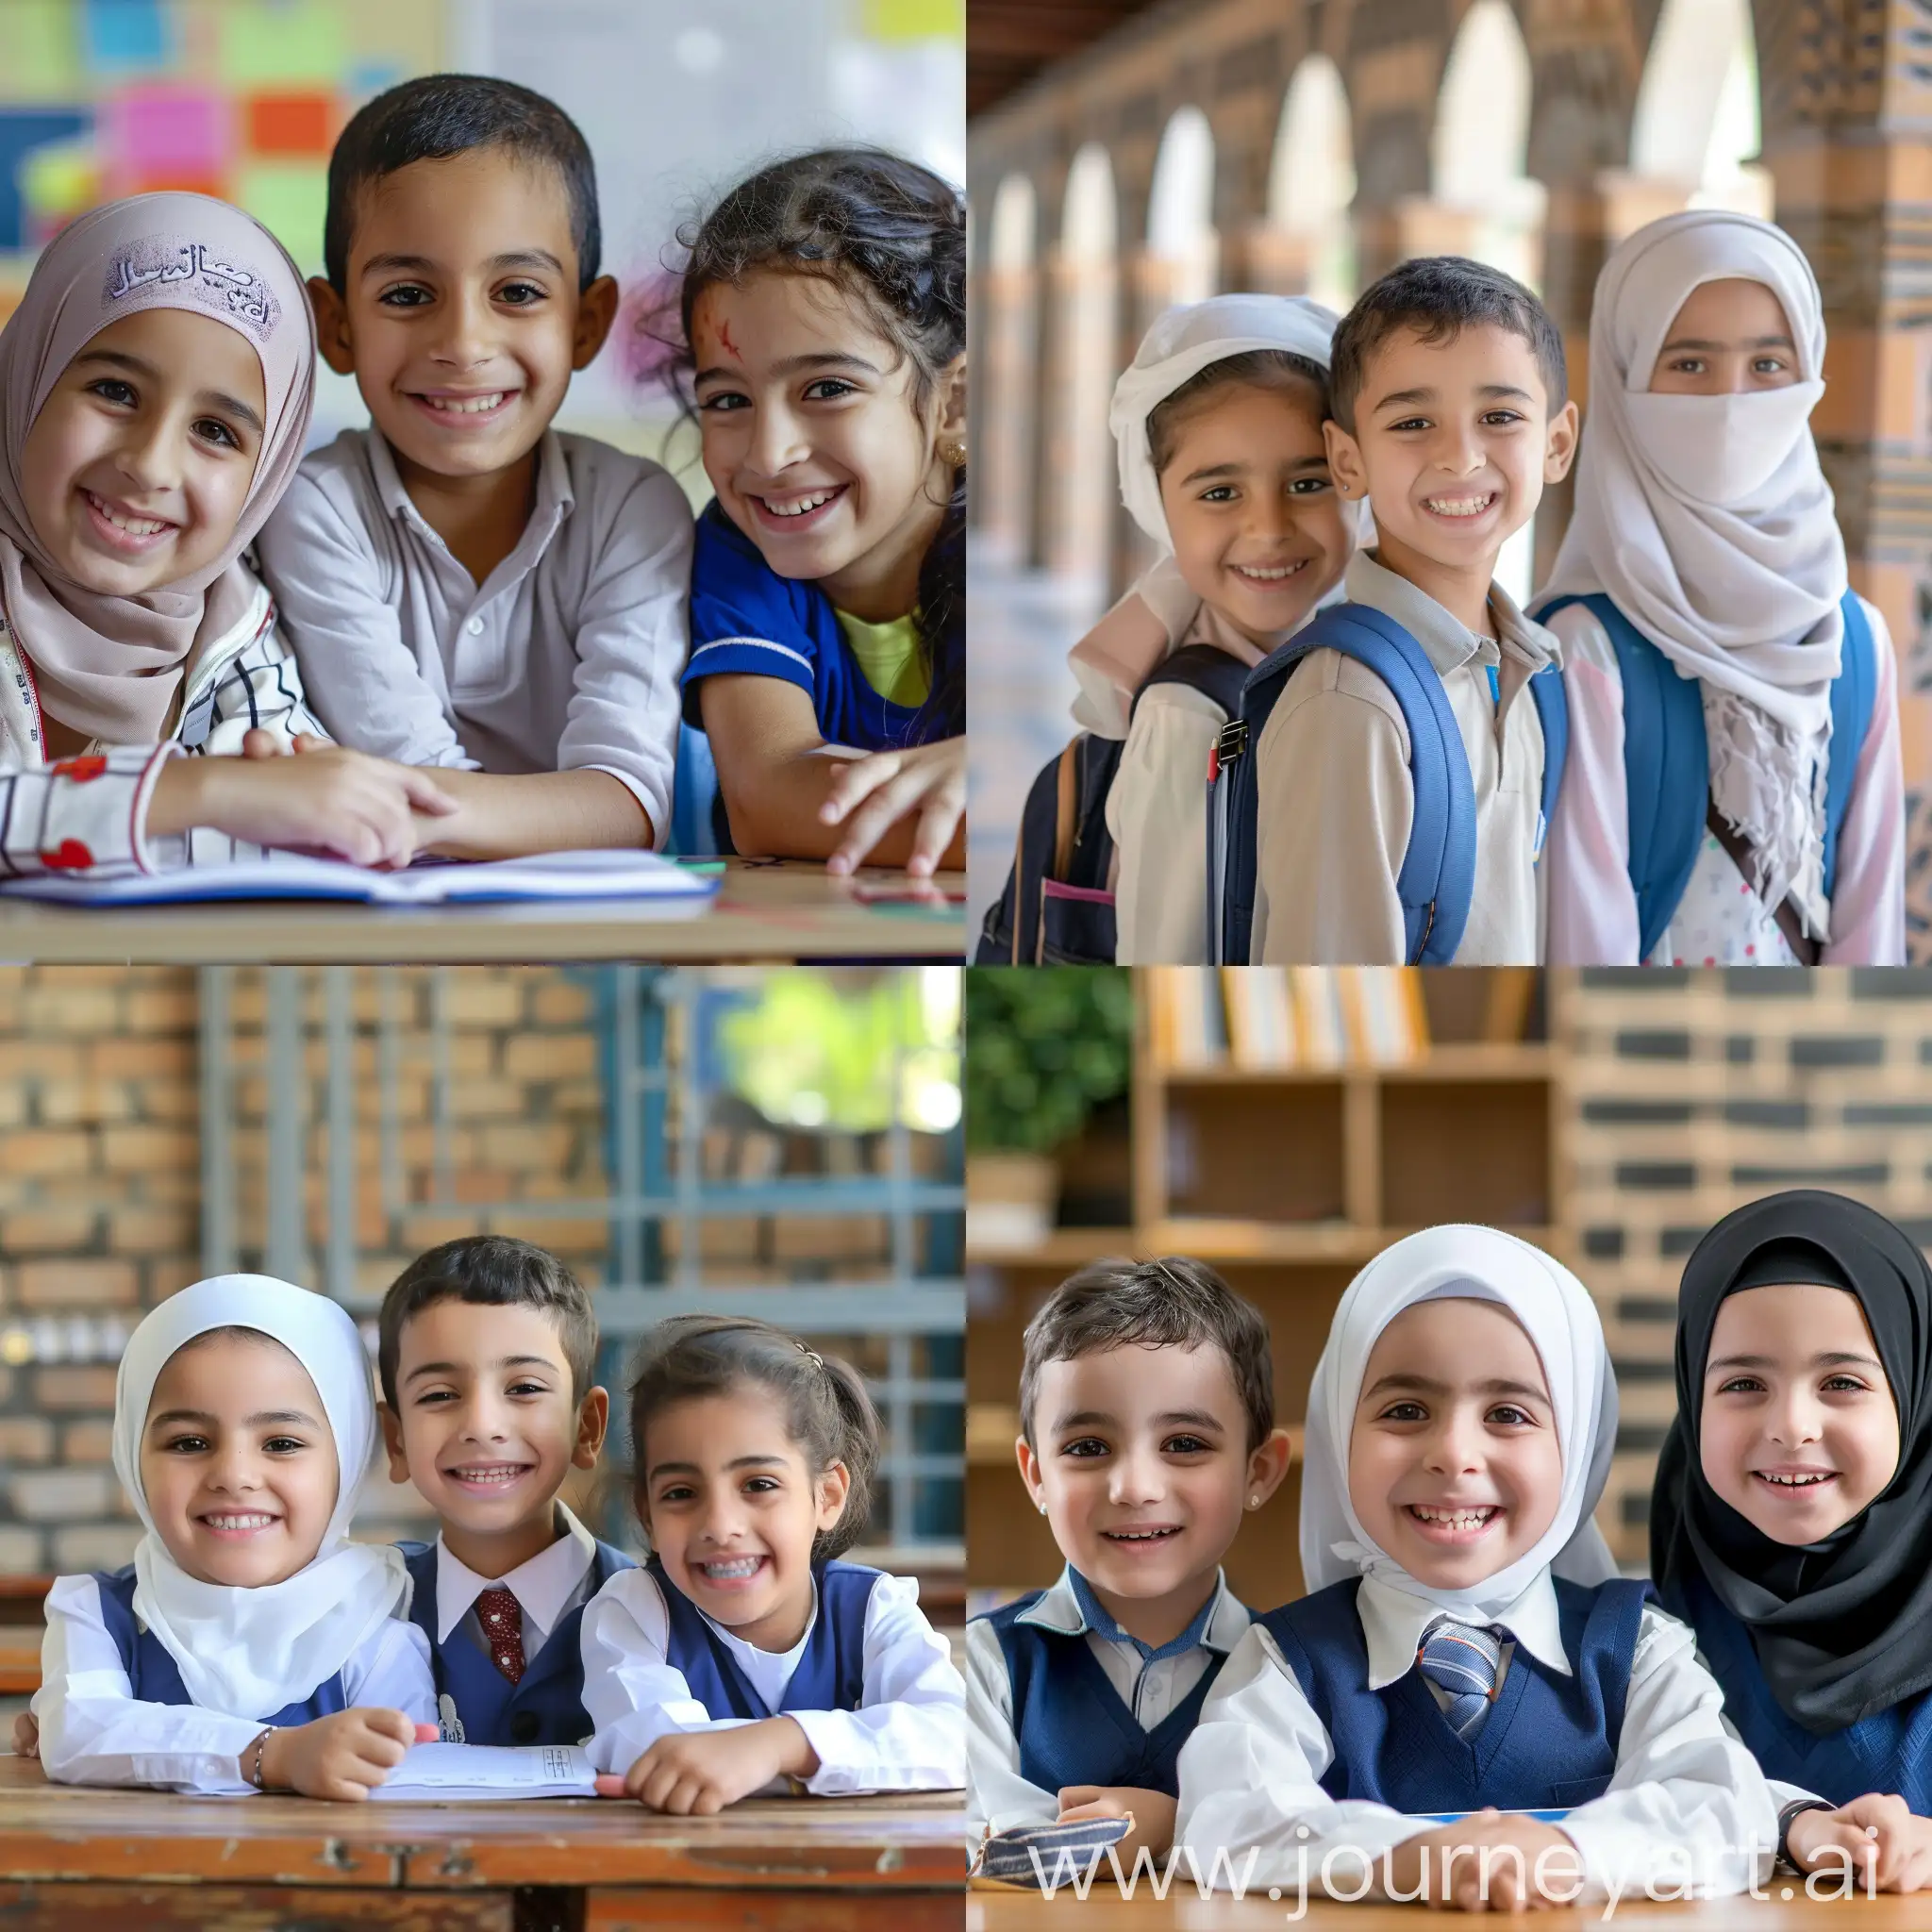  ثلاثة طلاب بملامح عربية في عمر الثامنة
  في المدرسة مبتسمين صورة واقعية  
يدرسون بفرح وسعادة